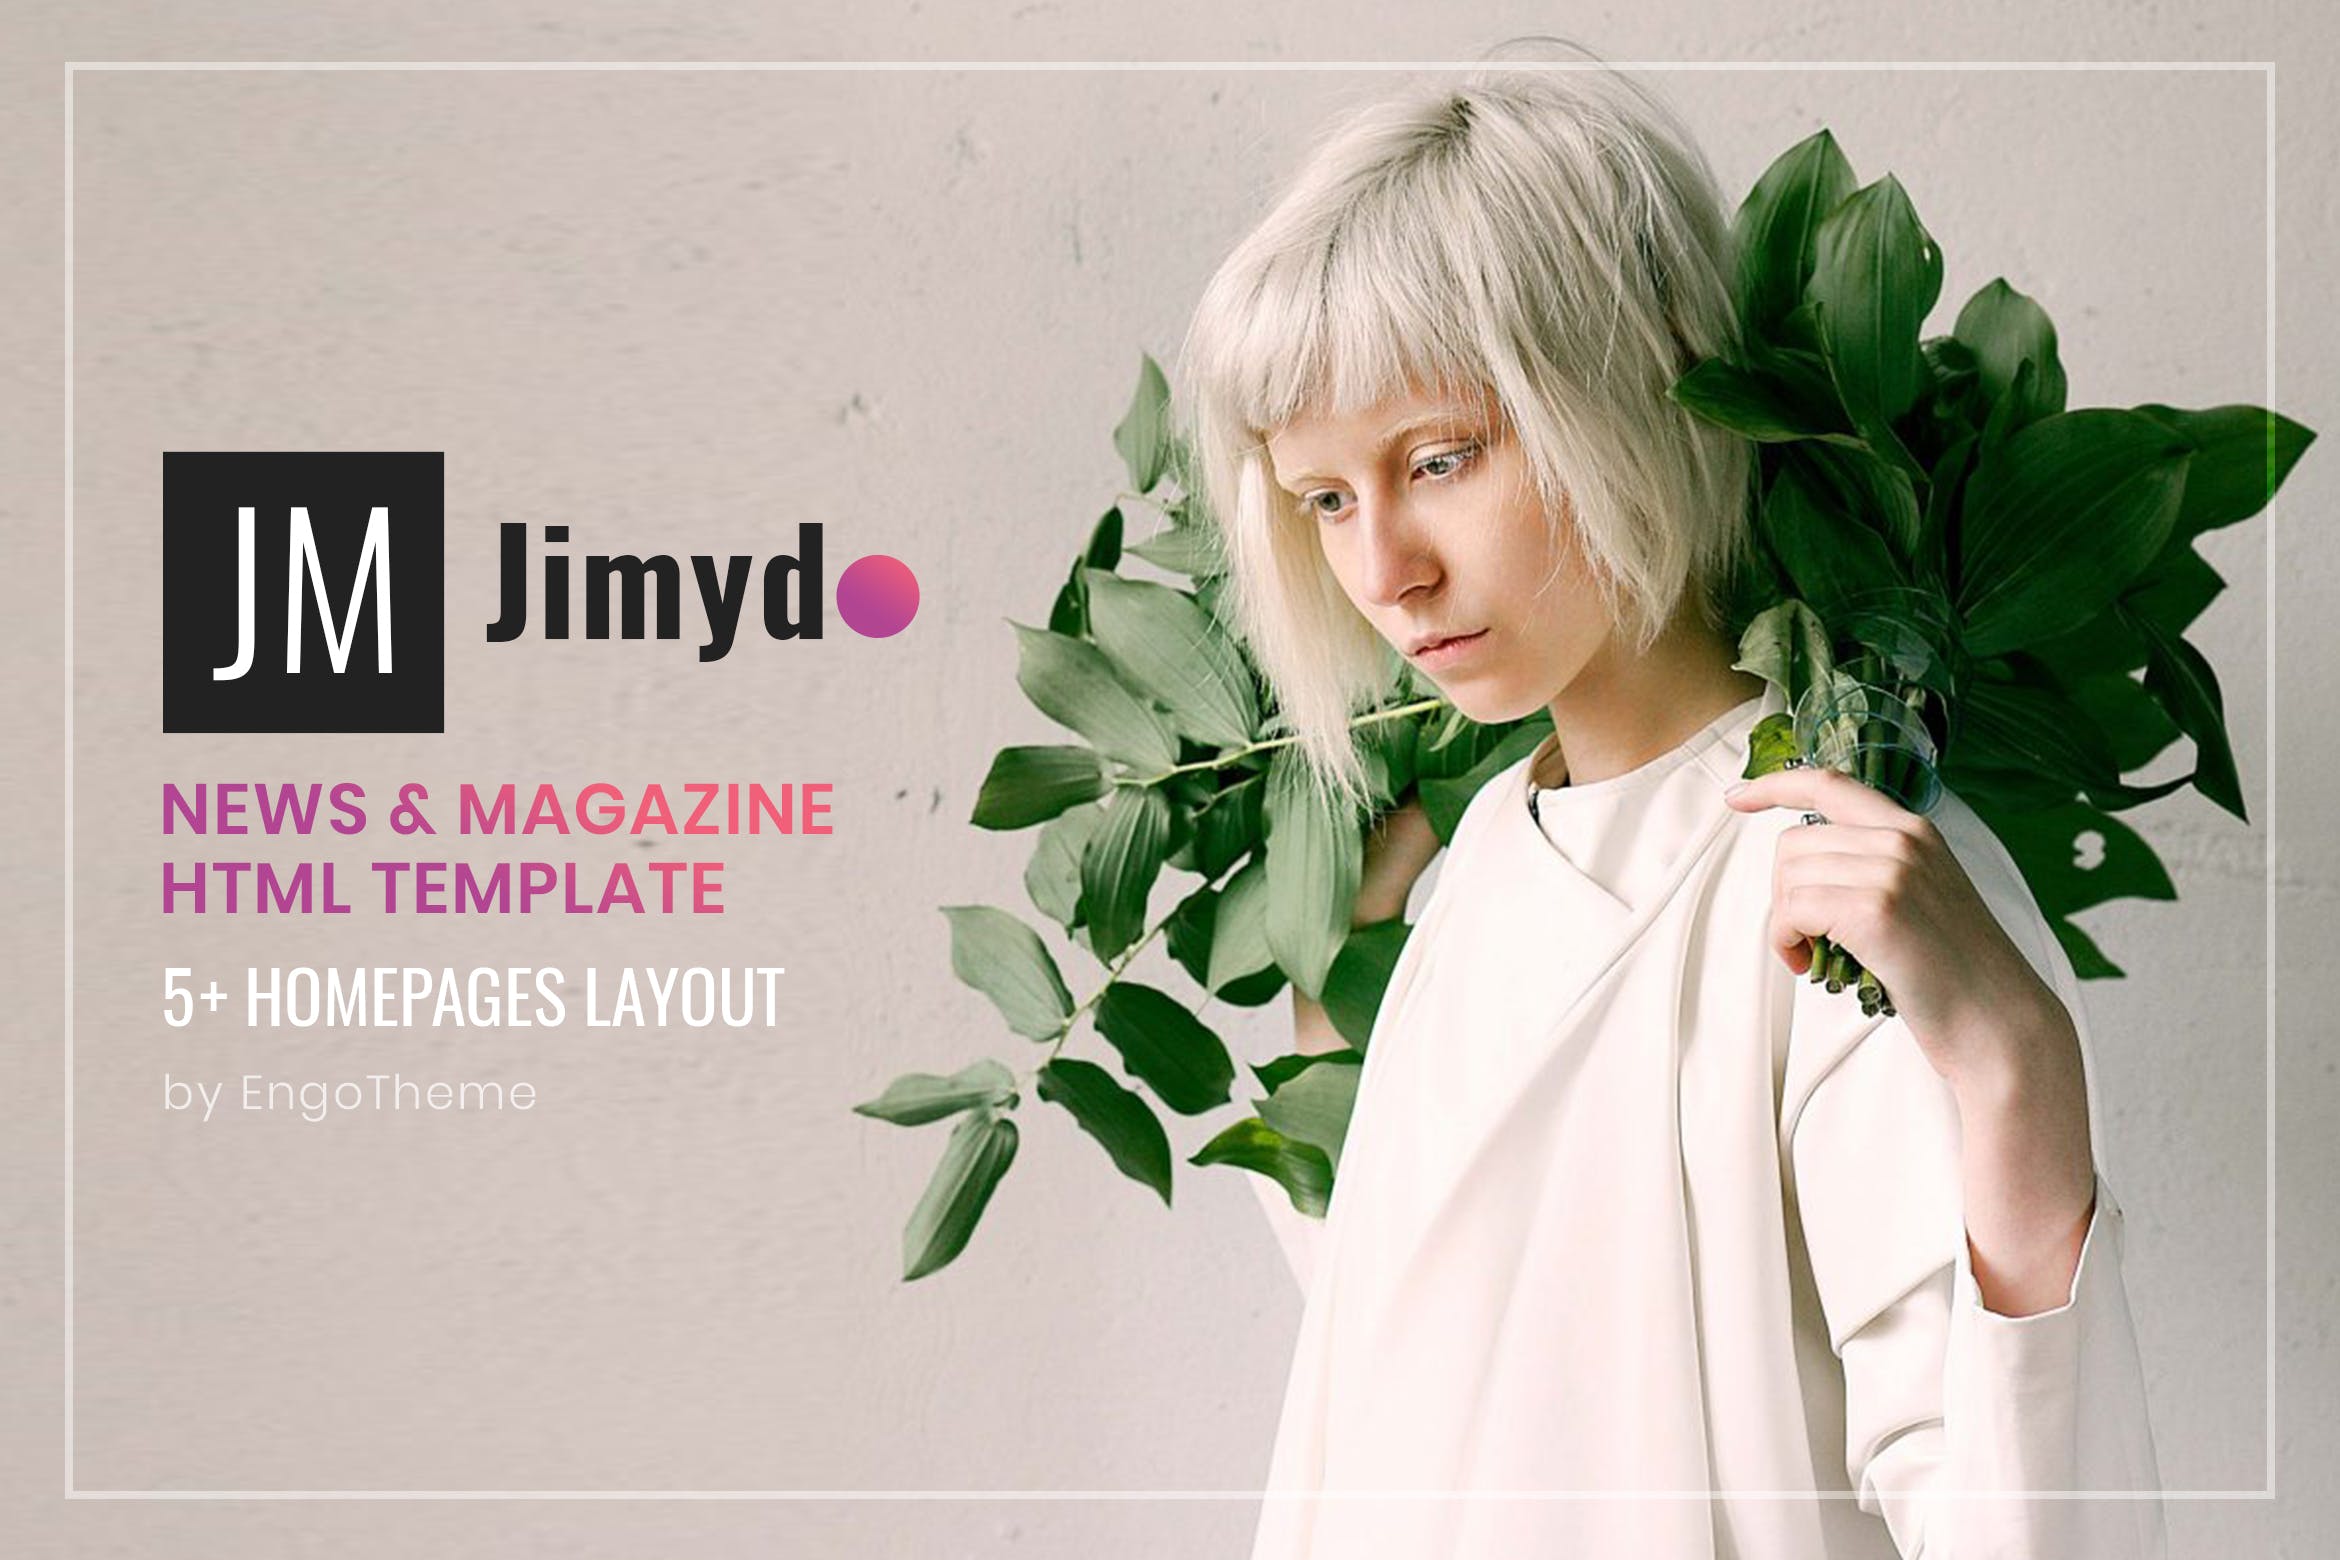 新闻资讯&杂志主题网站建设HTML模板素材库精选下载 JIMYDO | News & Magazine HTML Template插图